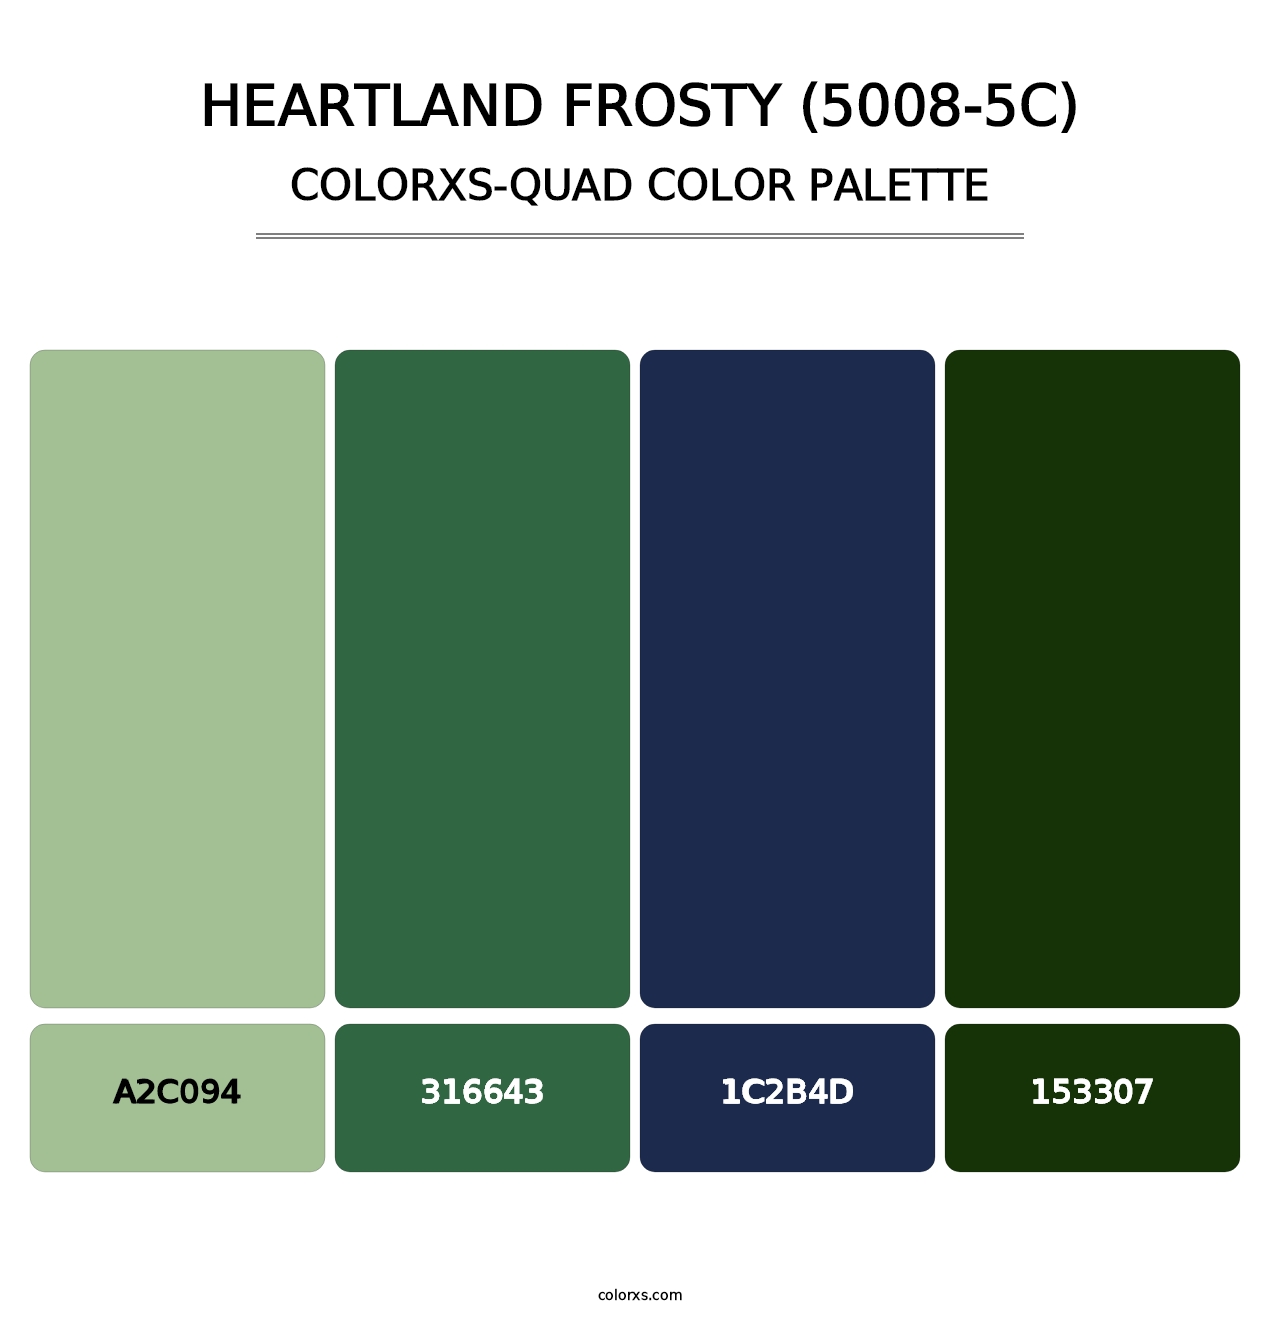 Heartland Frosty (5008-5C) - Colorxs Quad Palette